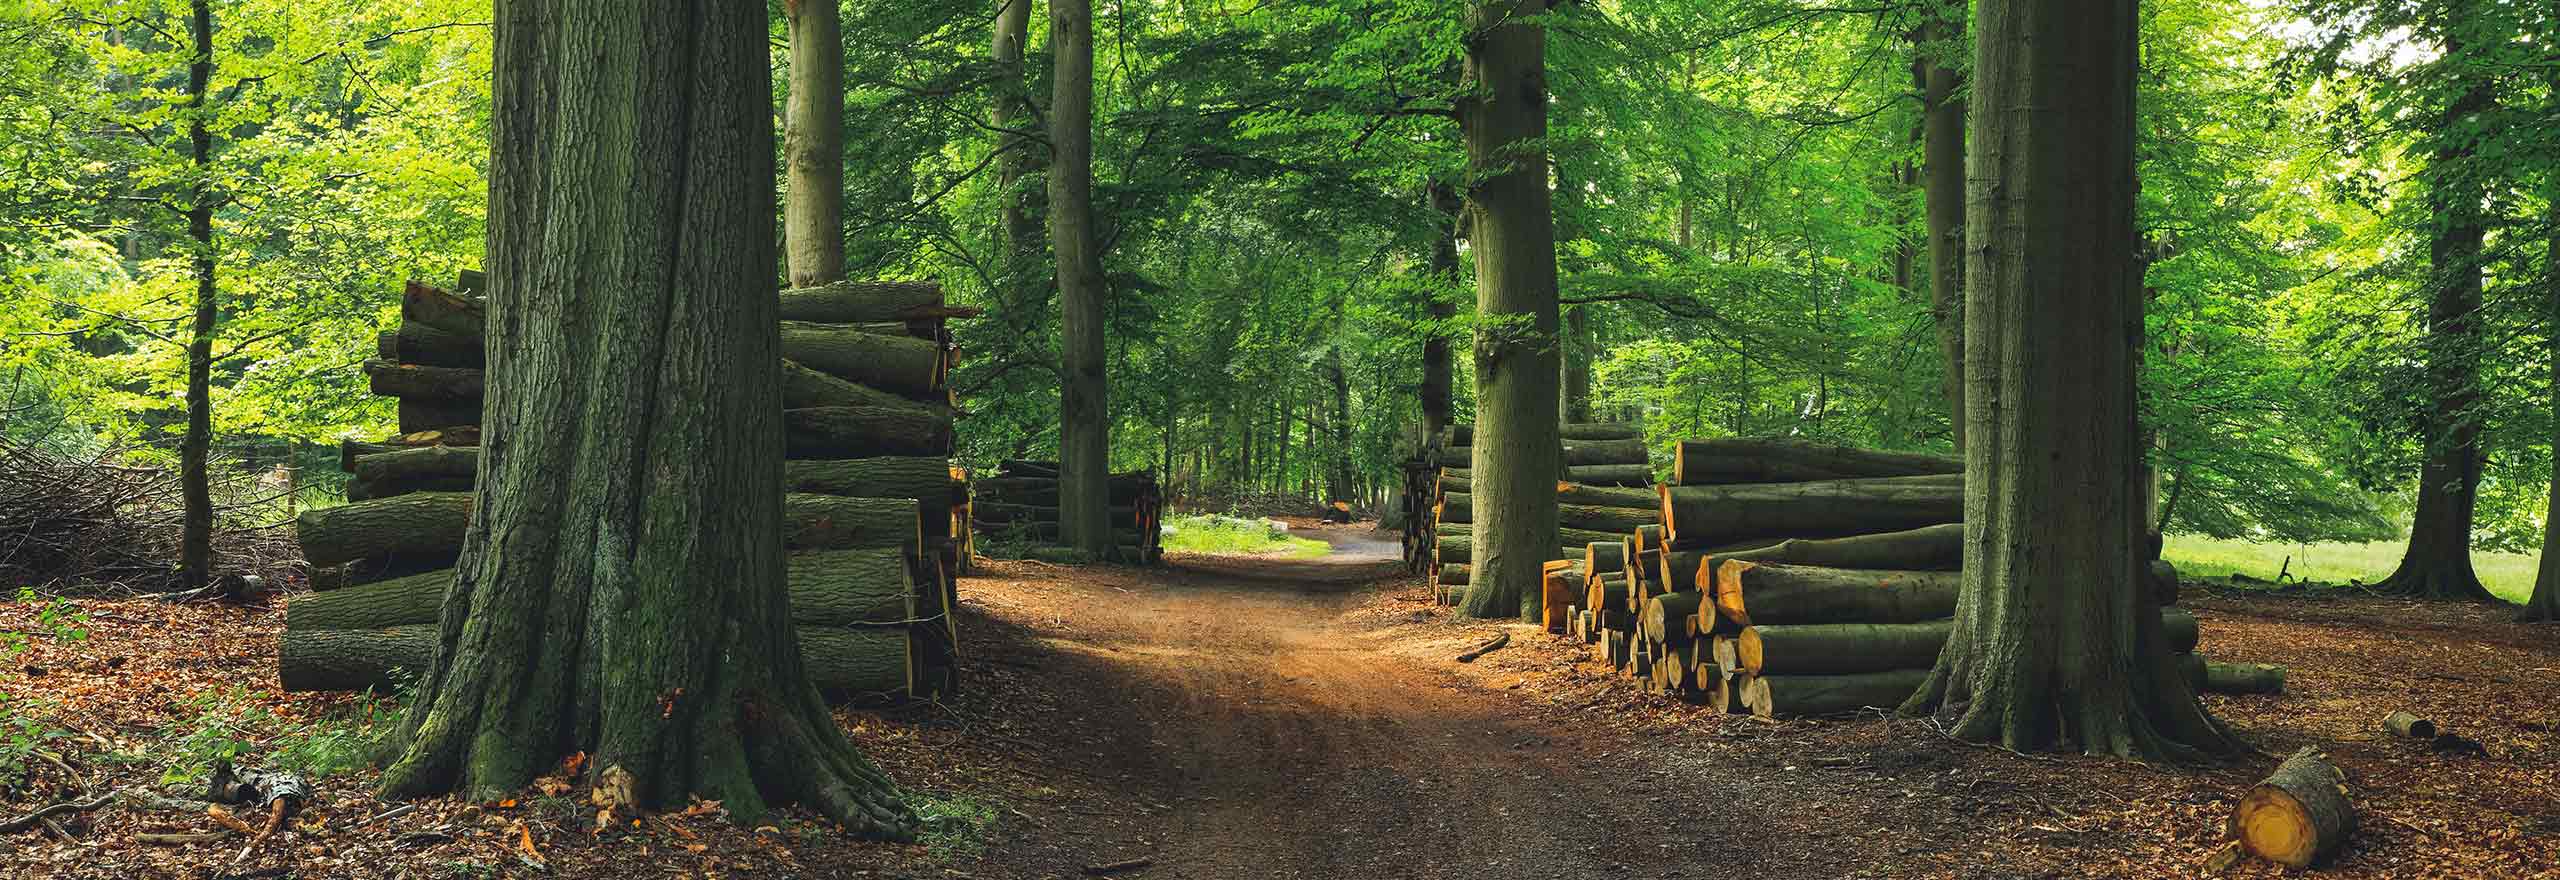 Bosque verde con árboles cortados y pilas de madera 